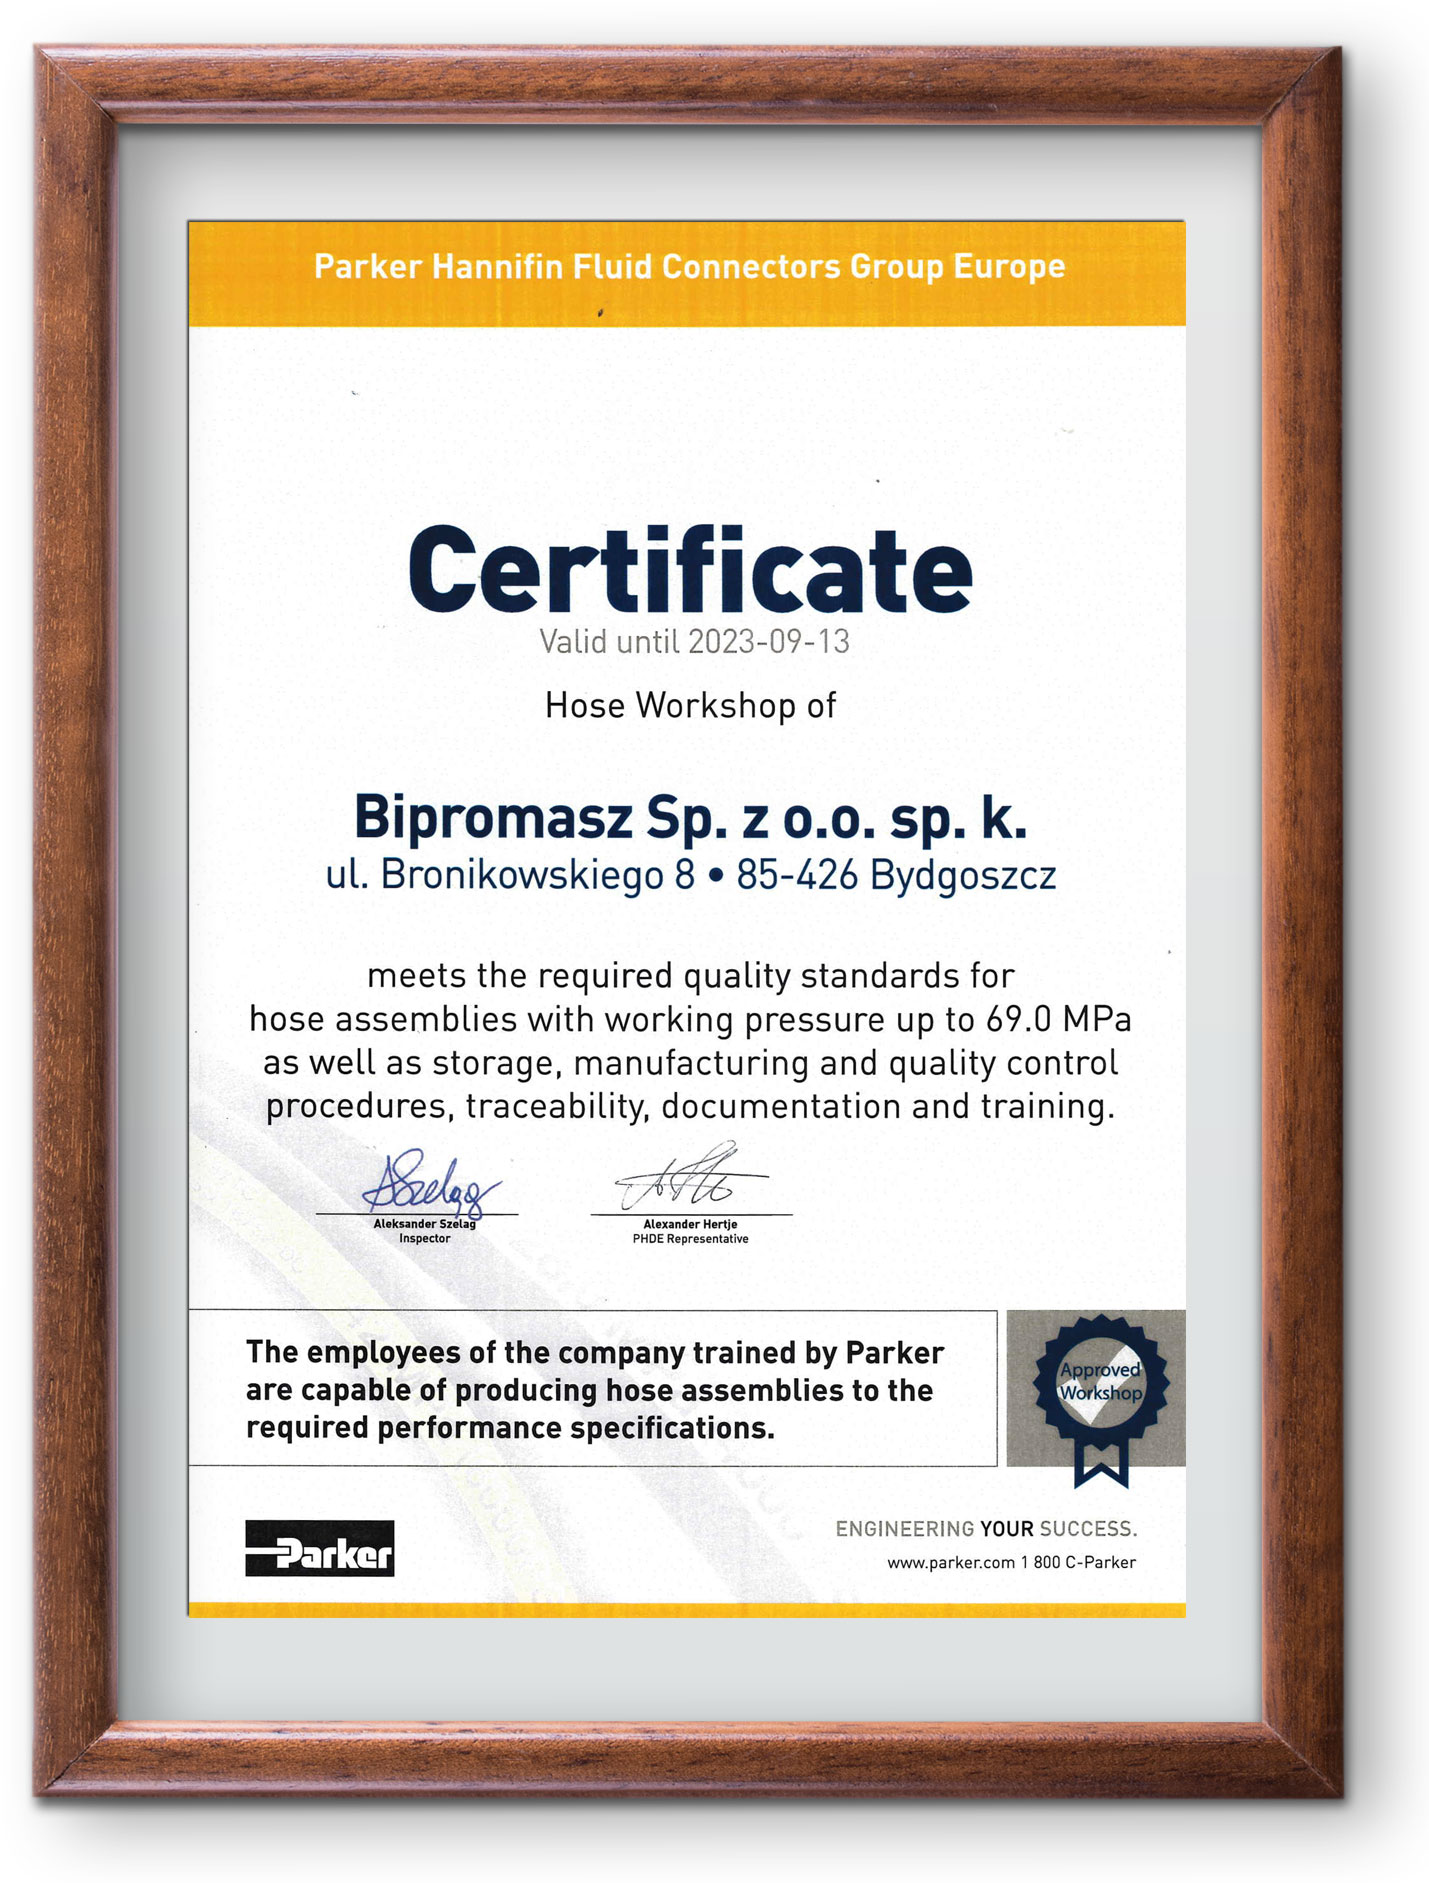 Certyfikacja międzynarodowa PARKER dla nowoczesnego stanowiska produkcji przewodów hydraulicznych Bipromasz